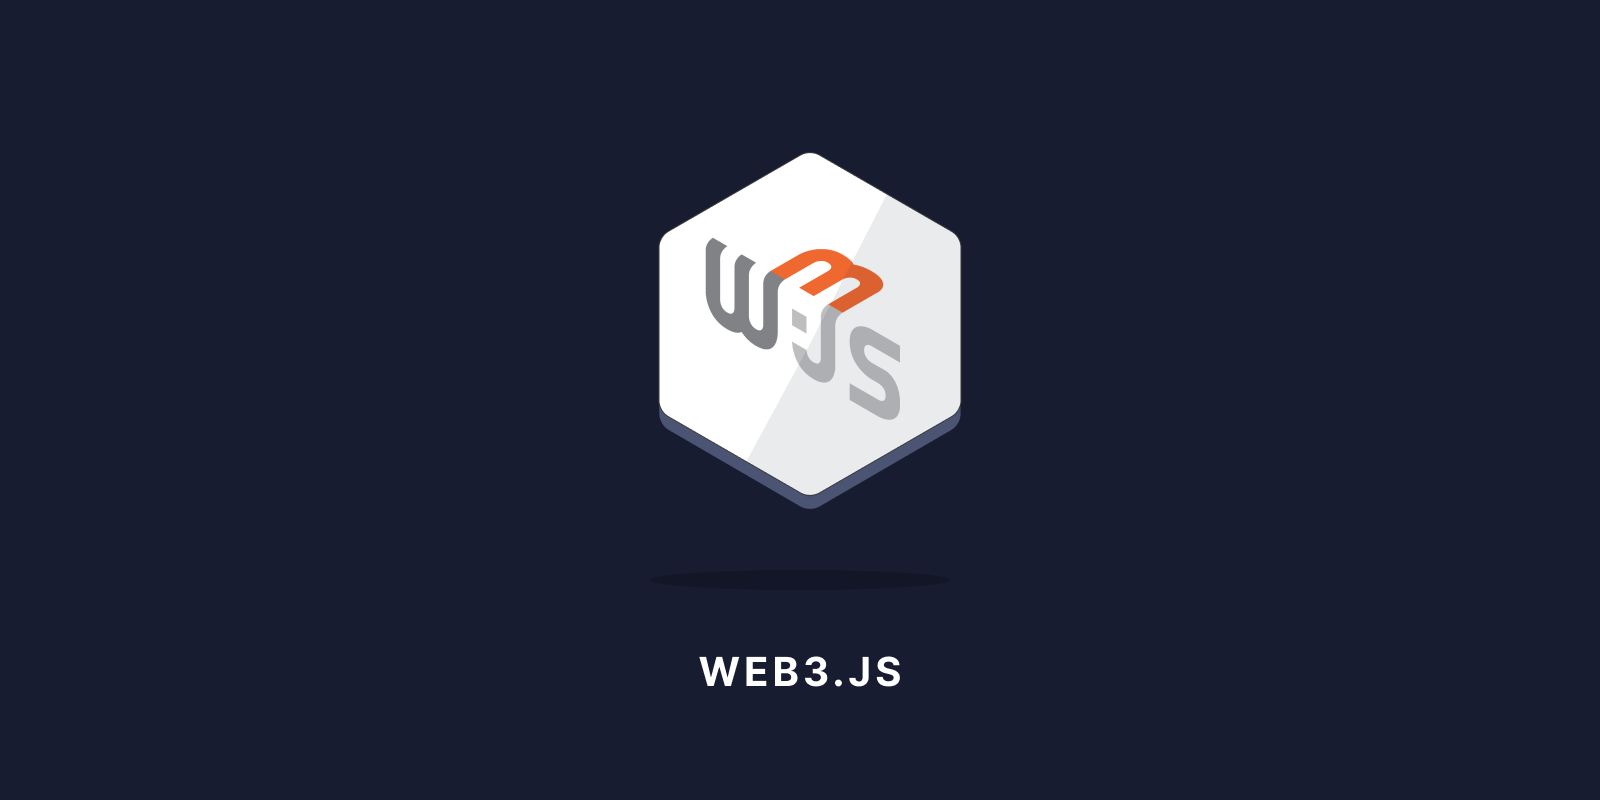 Hire Web3.js developers